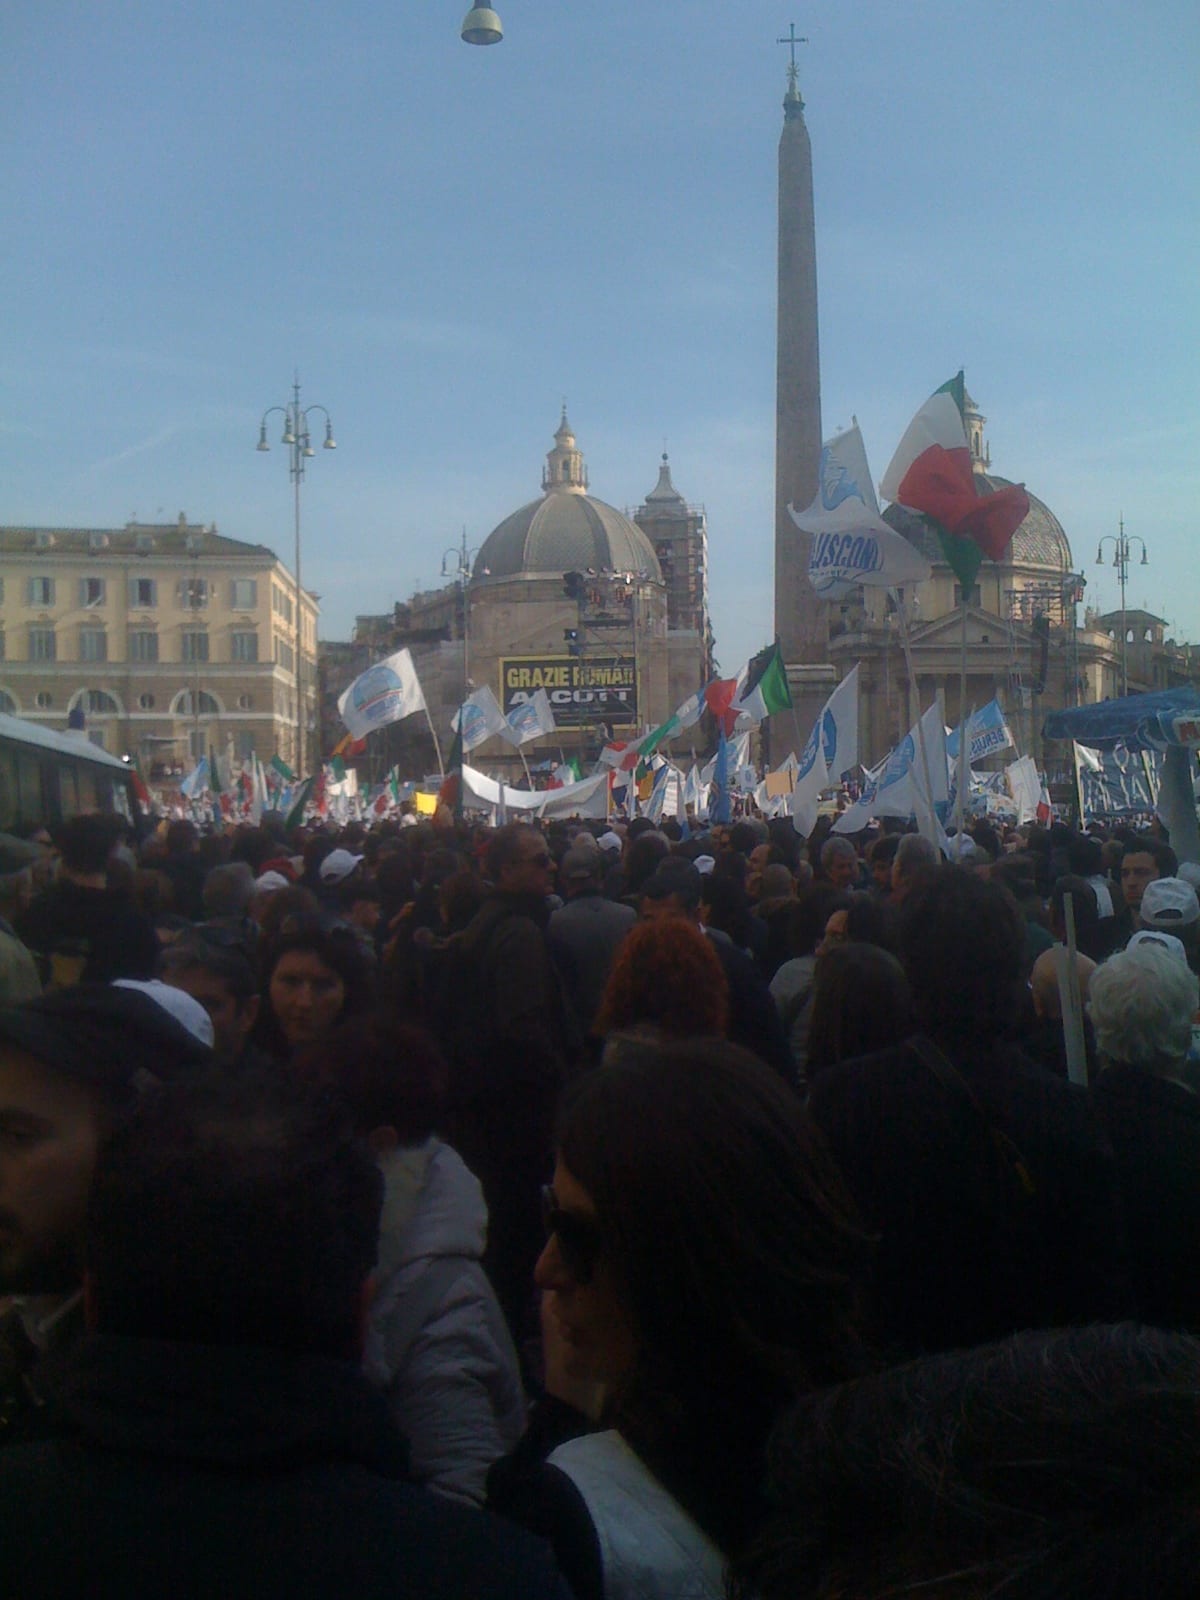 Silighini in piazza racconta il “popolo di Silvio”